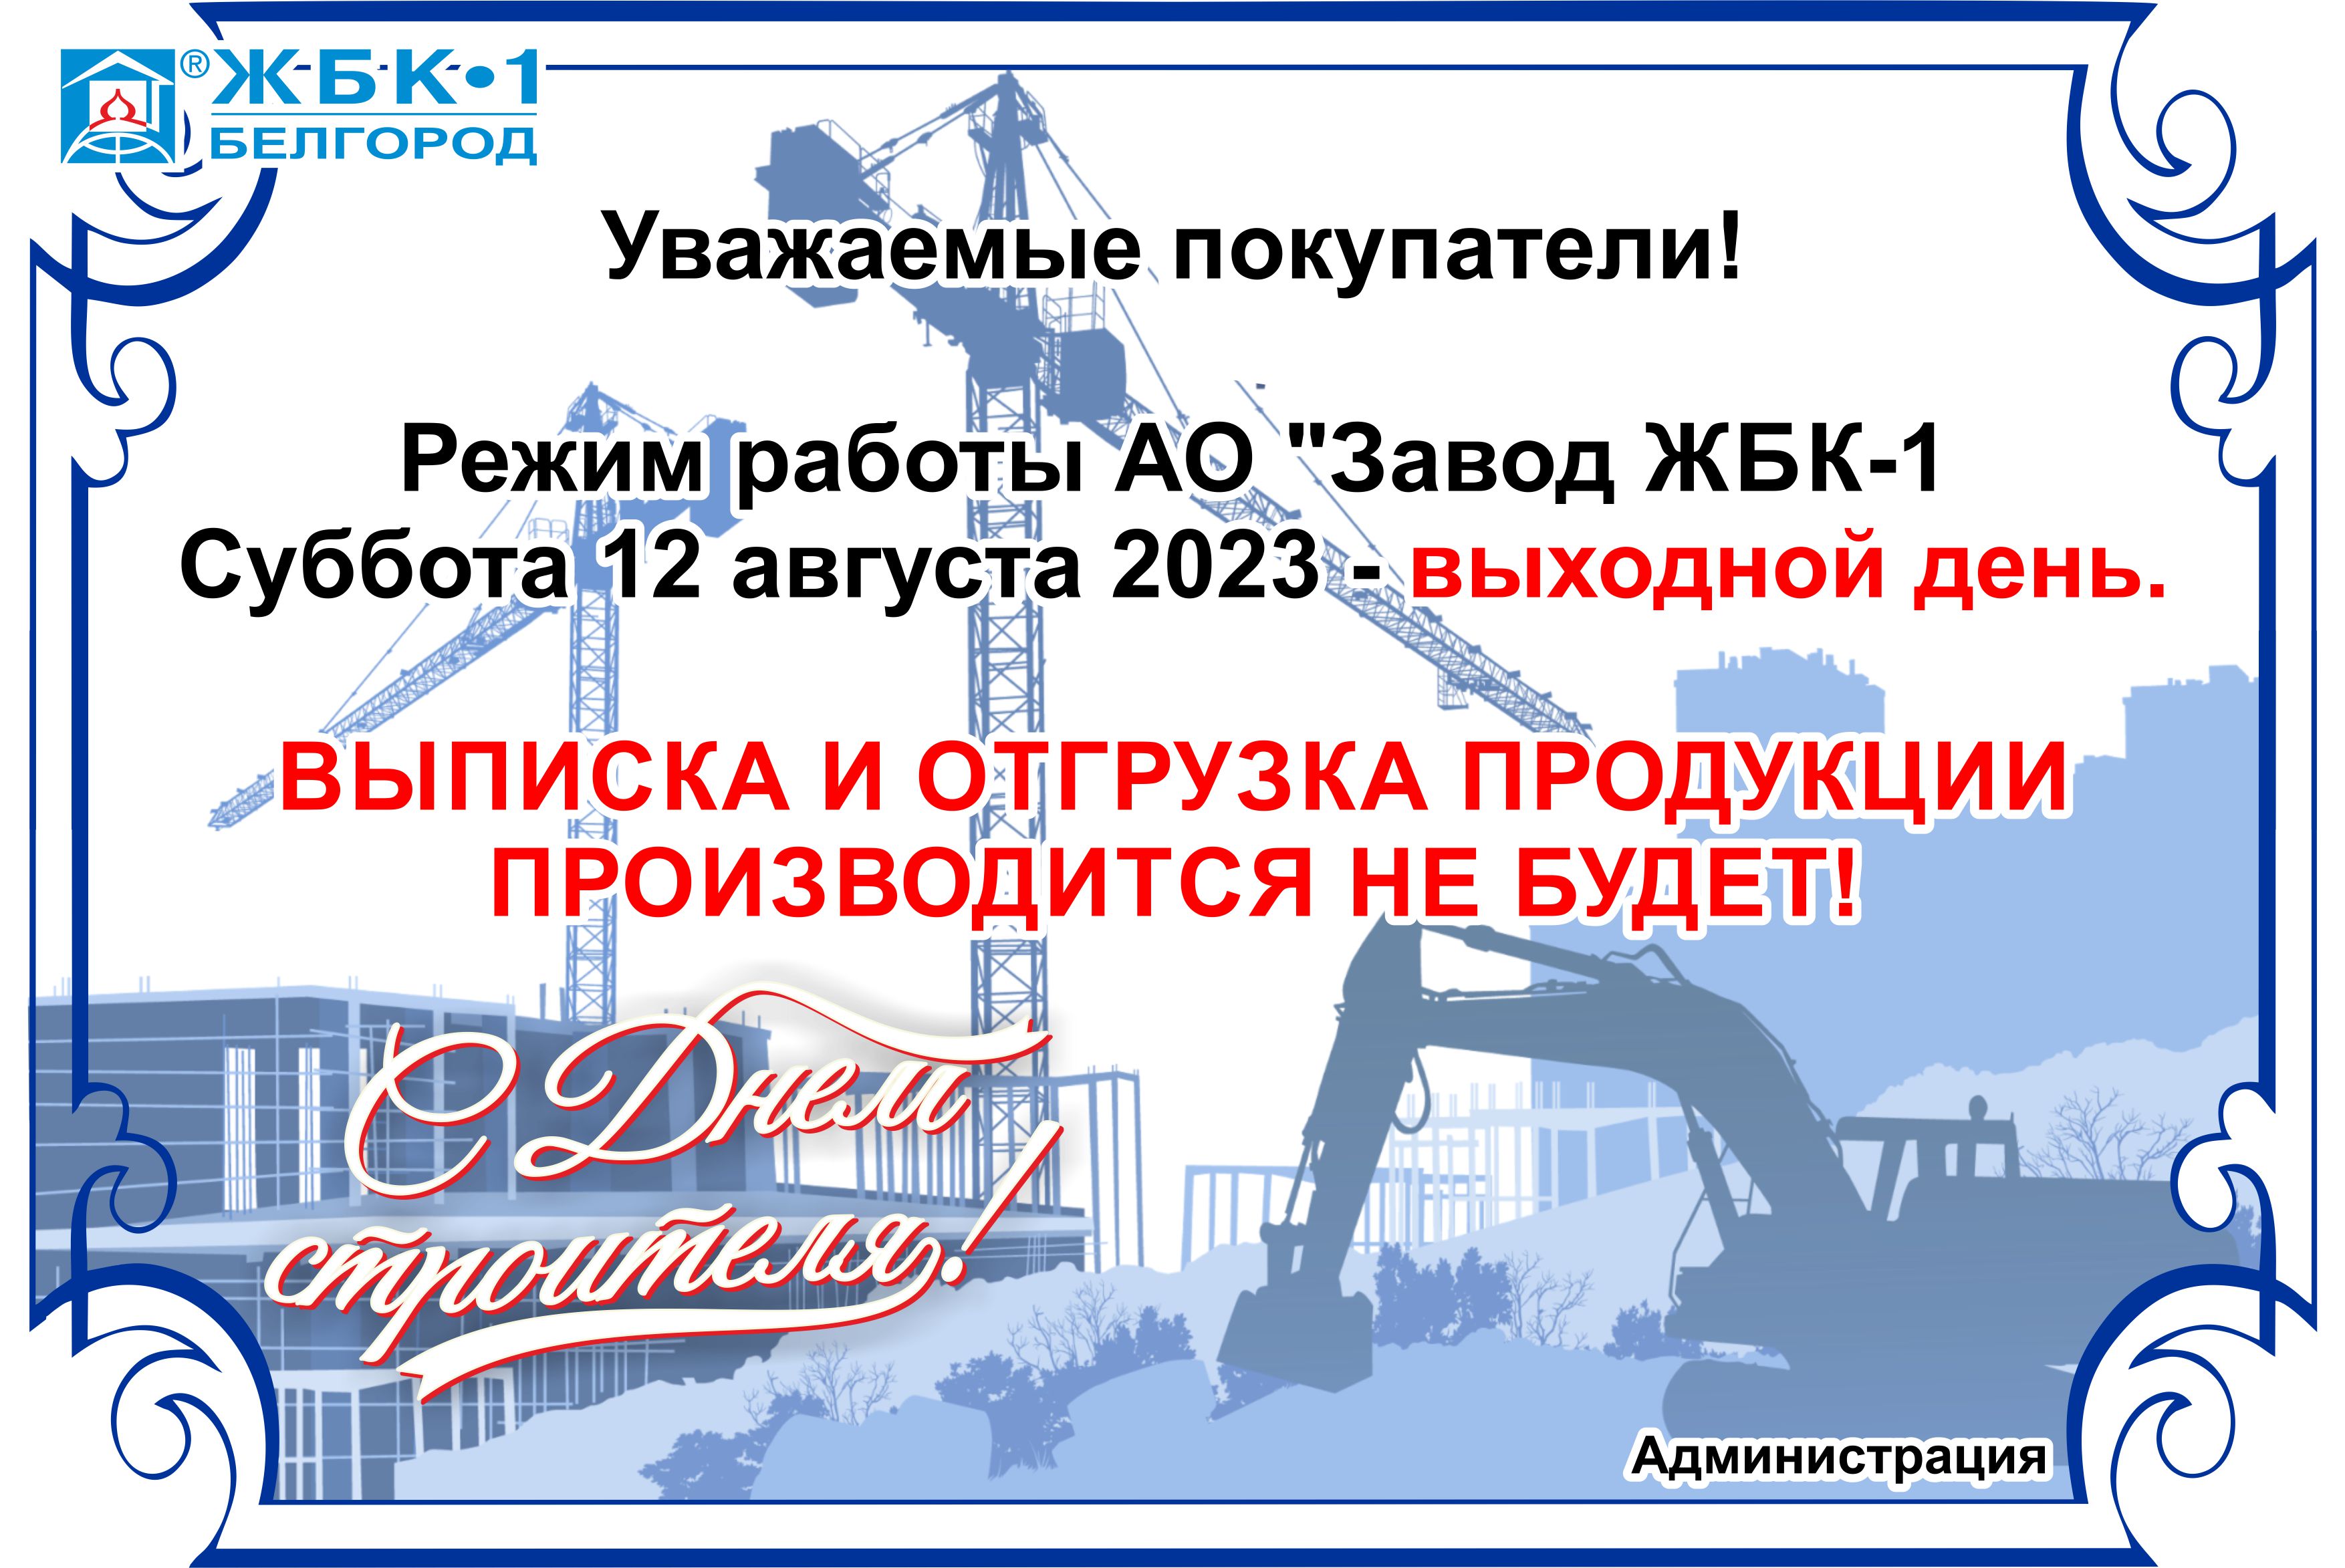 Внимание! Режим работы АО "Завод ЖБК-1" 12 августа 2023 г.!